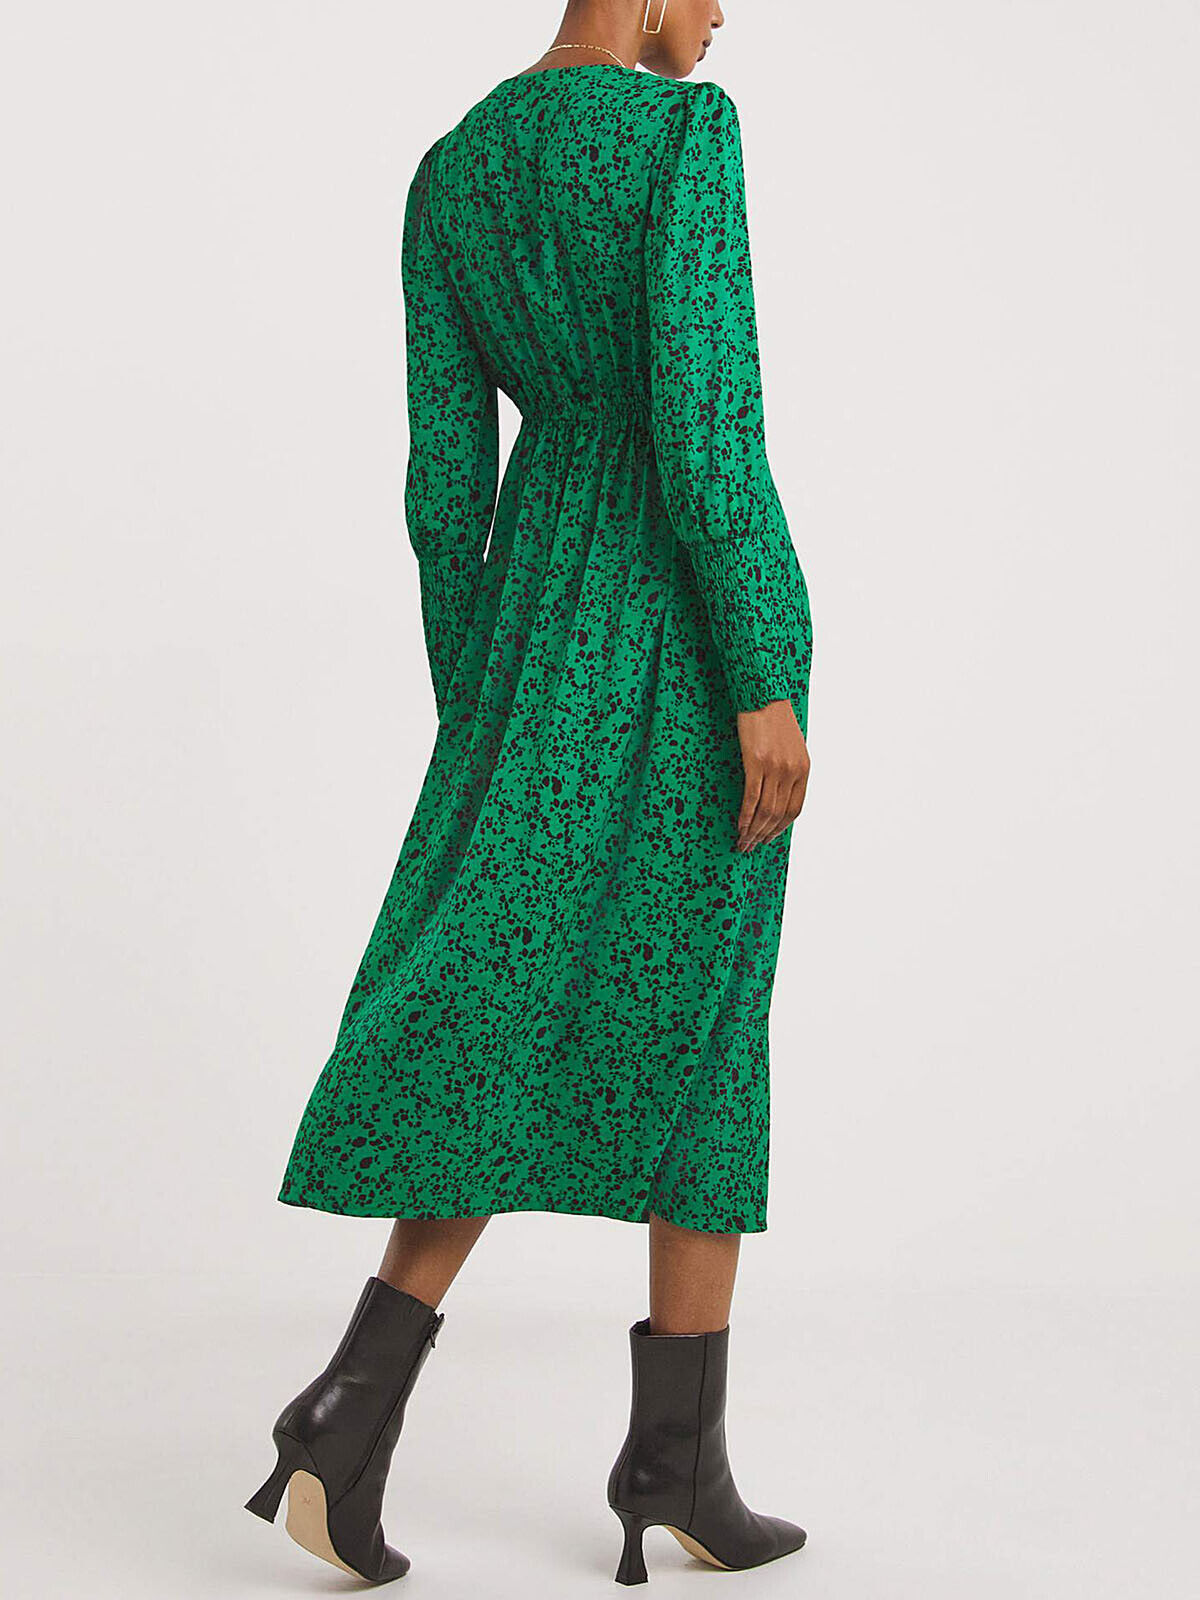 JD Williams Green Printed V-Neck Deep Cuff Split Midi Dress 18 20 24 26 28 30 32